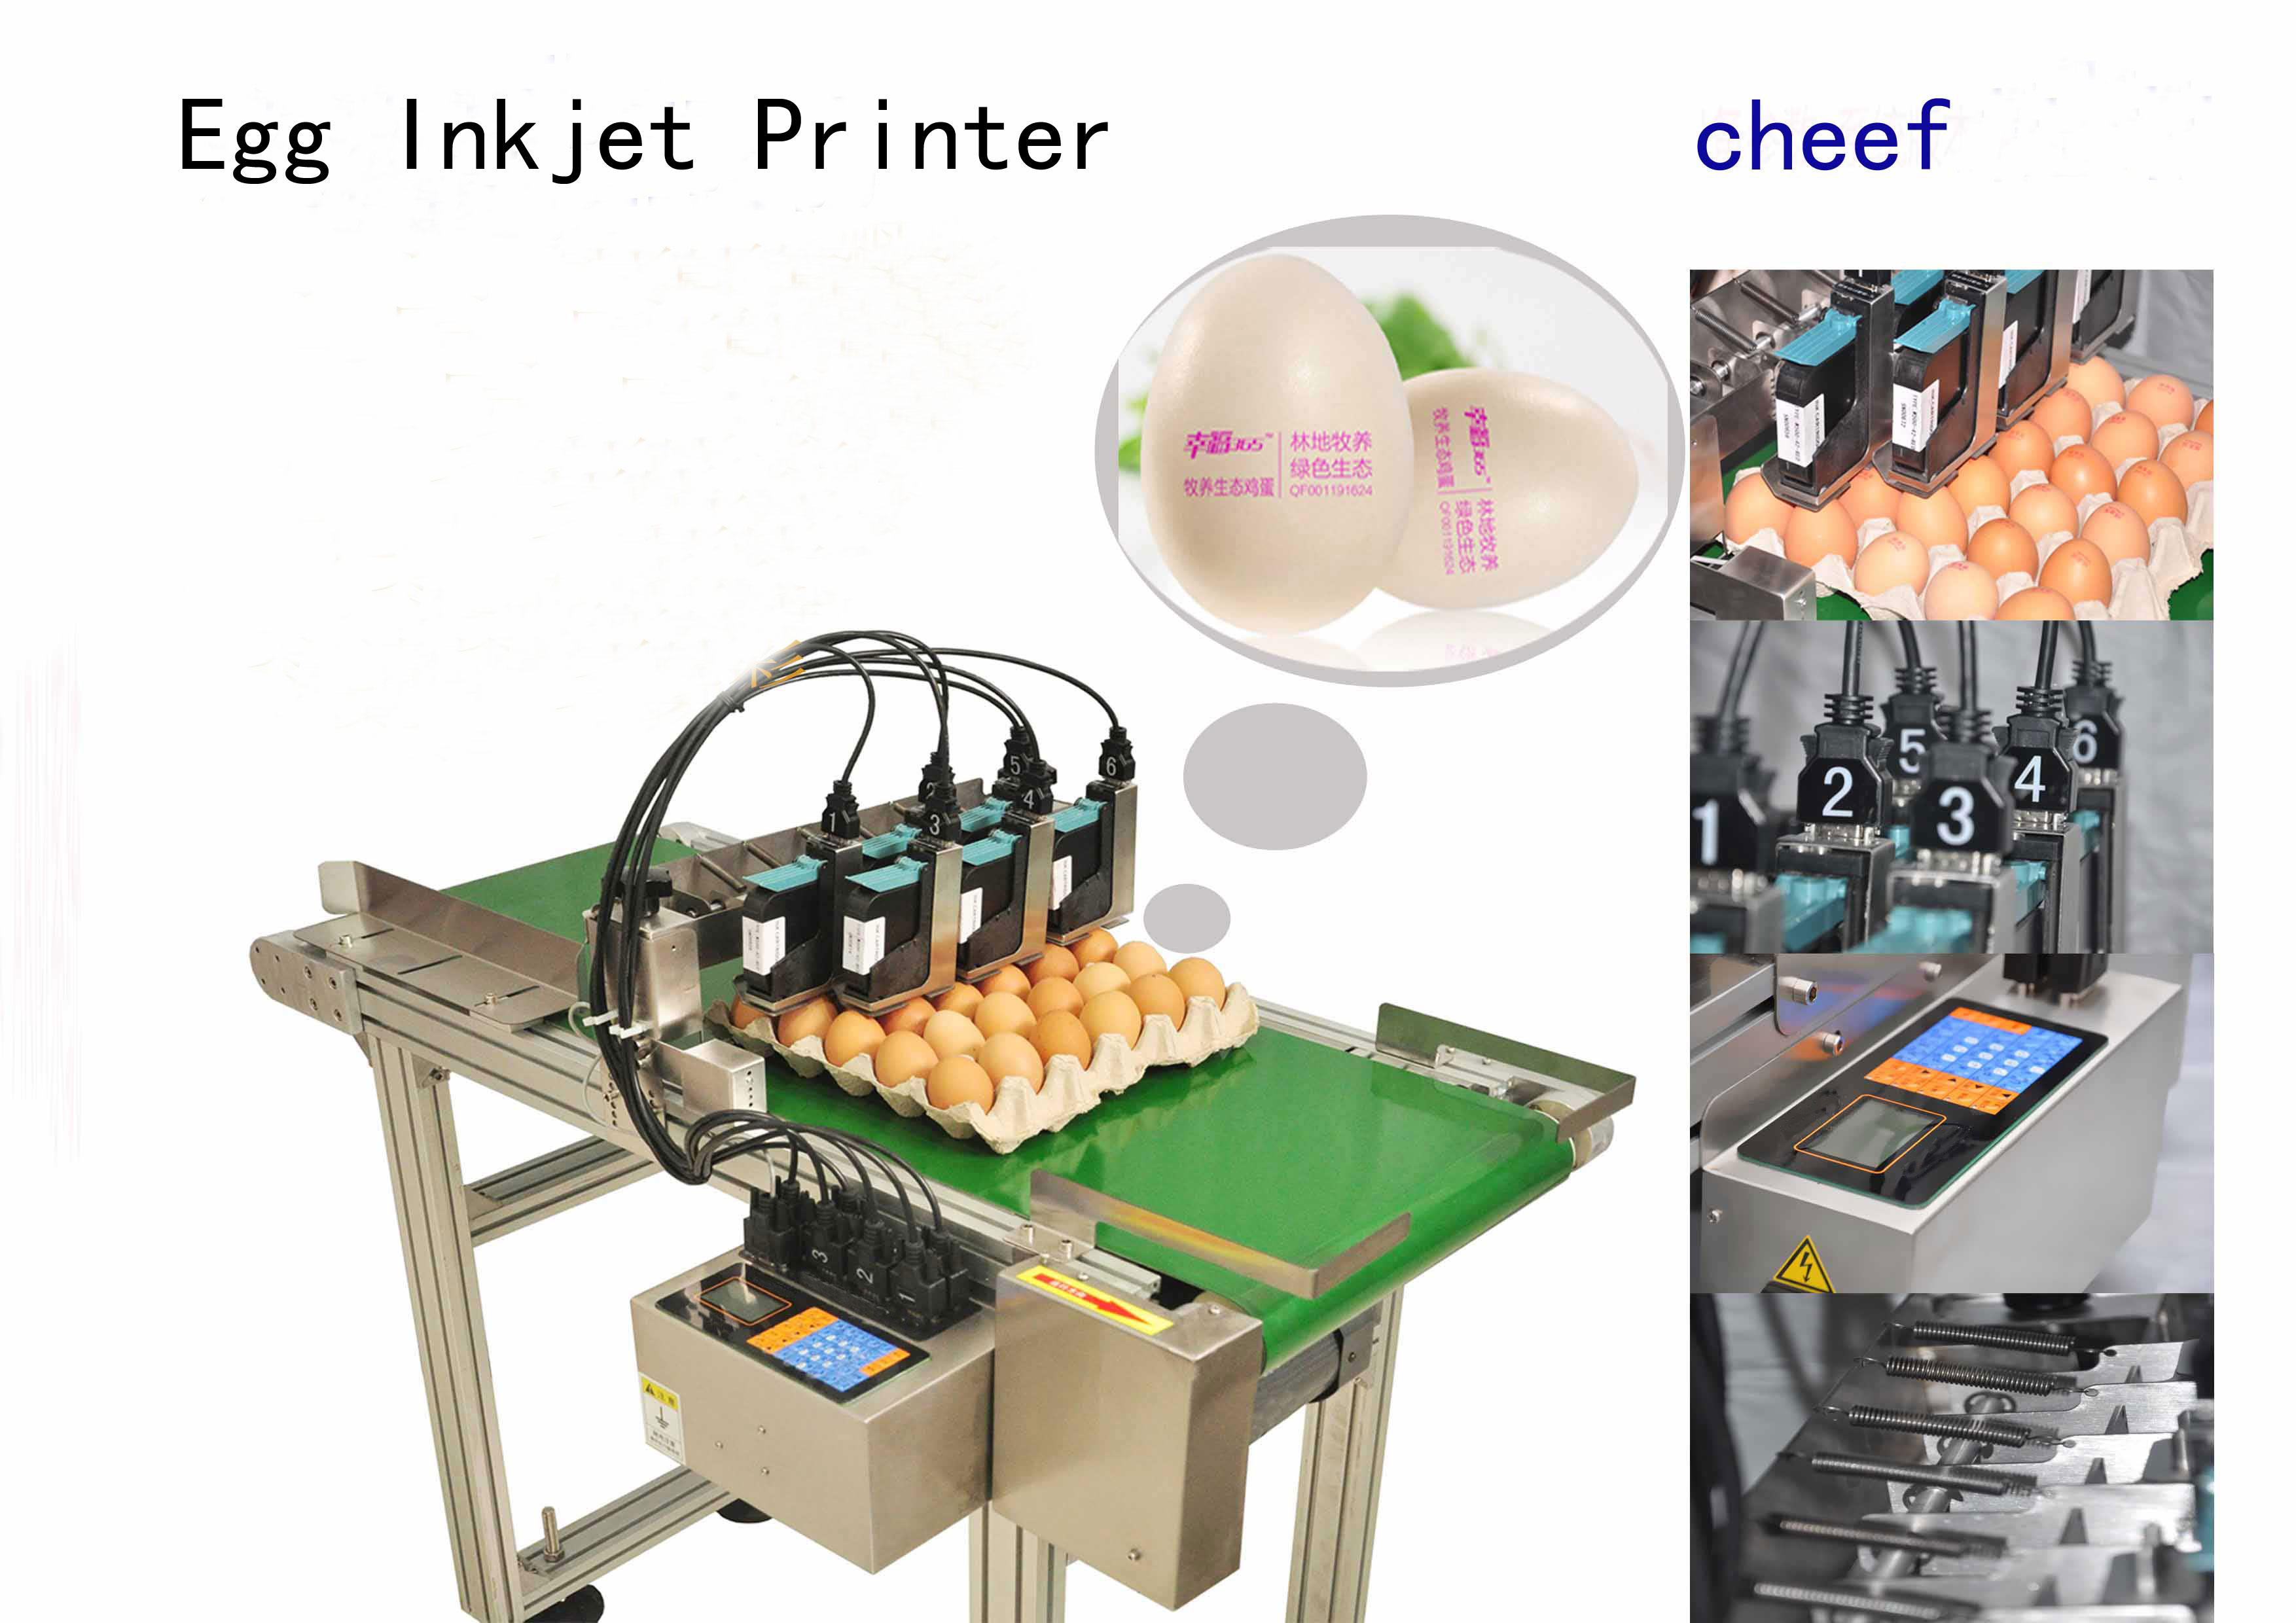 el fabricante suministra impresoras de chorro de tinta específicas para huevos de alta eficiencia con un transportador de 2 metros